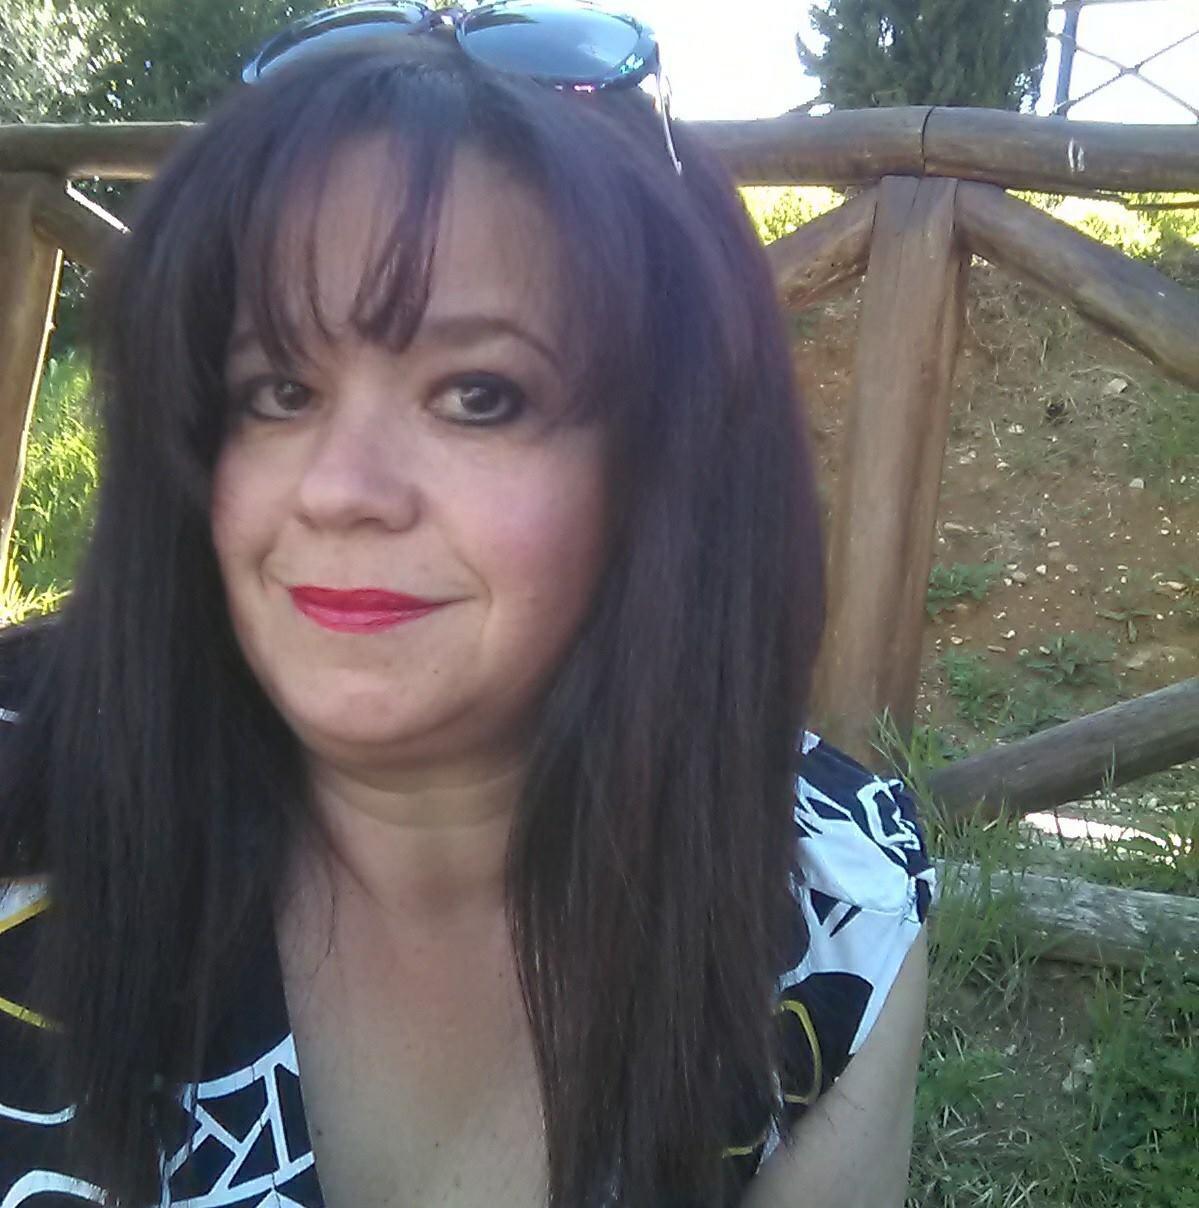 Susy Paci è stata ritrovata a Napoli: la donna scomparsa ad Arezzo voleva stare lontana dal marito